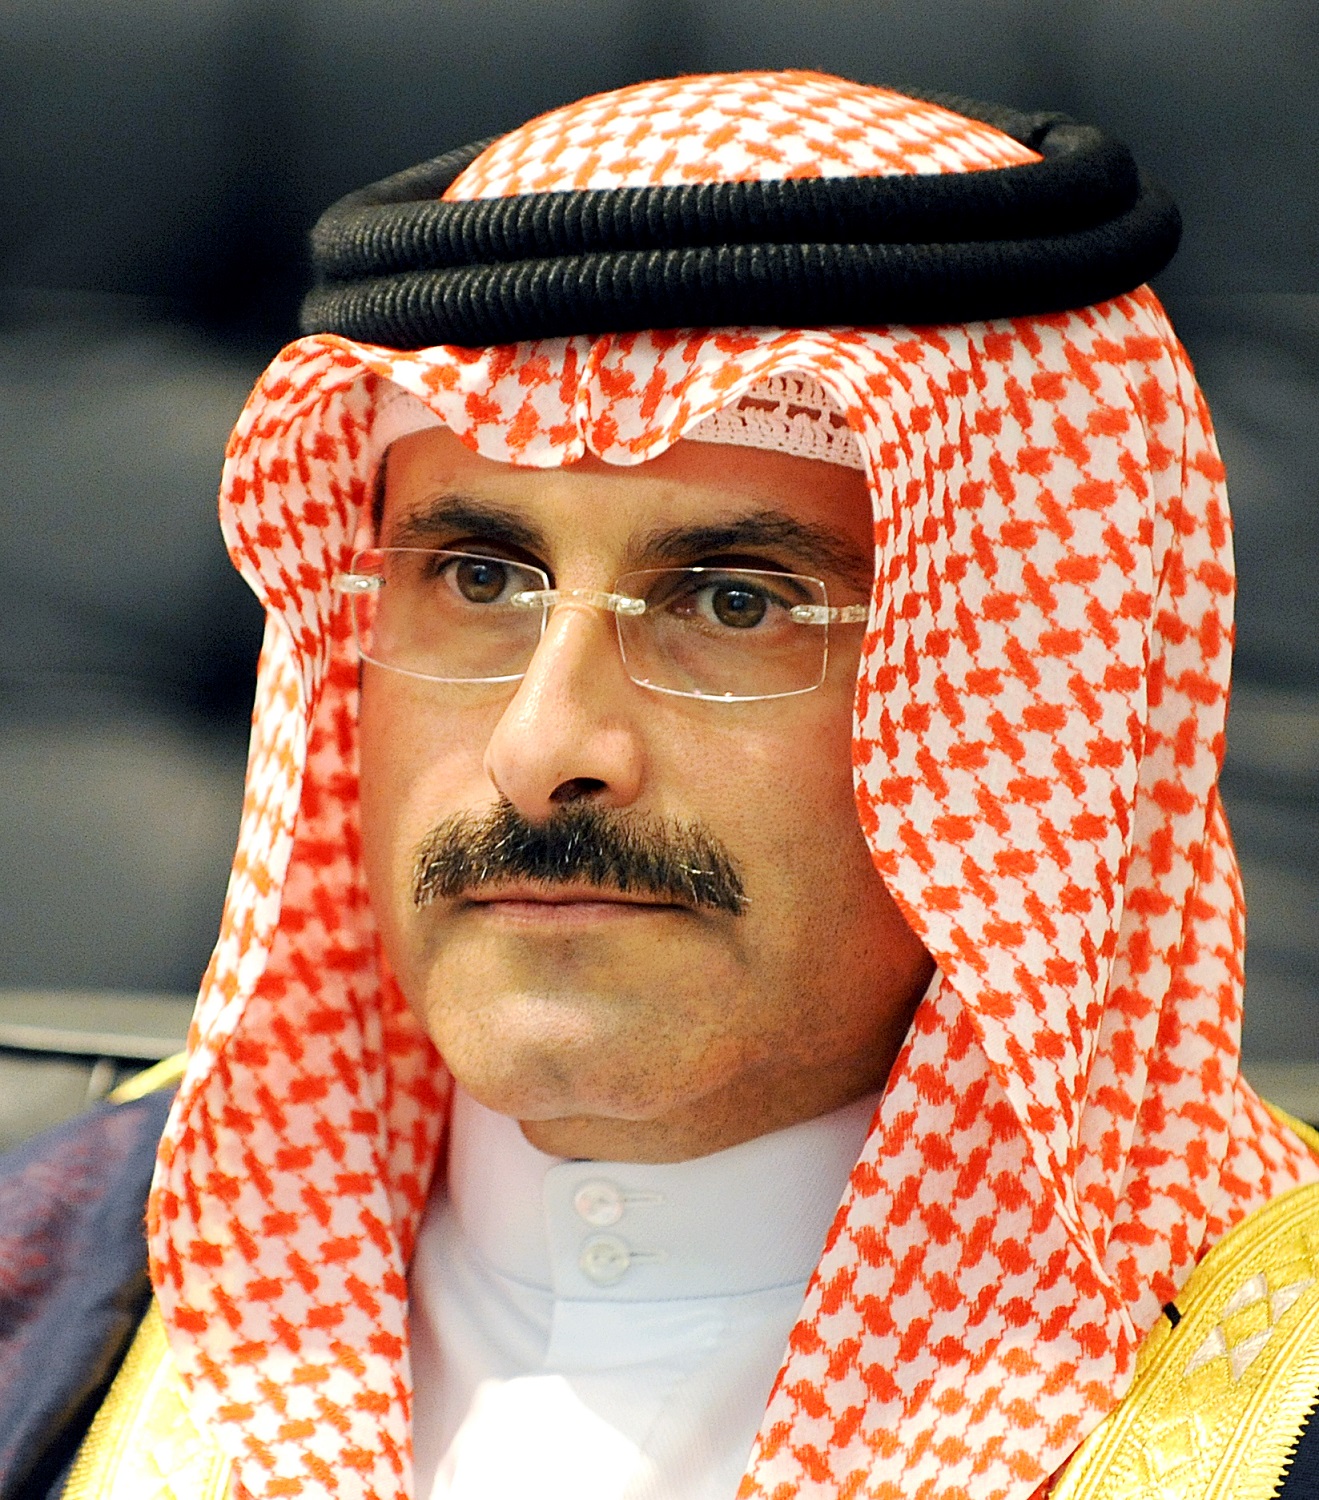 رئيس مجلس الإدارة والمدير العام لوكالة الأنباء الكويتية (كونا) الشيخ مبارك دعيج الإبراهيم الصباح